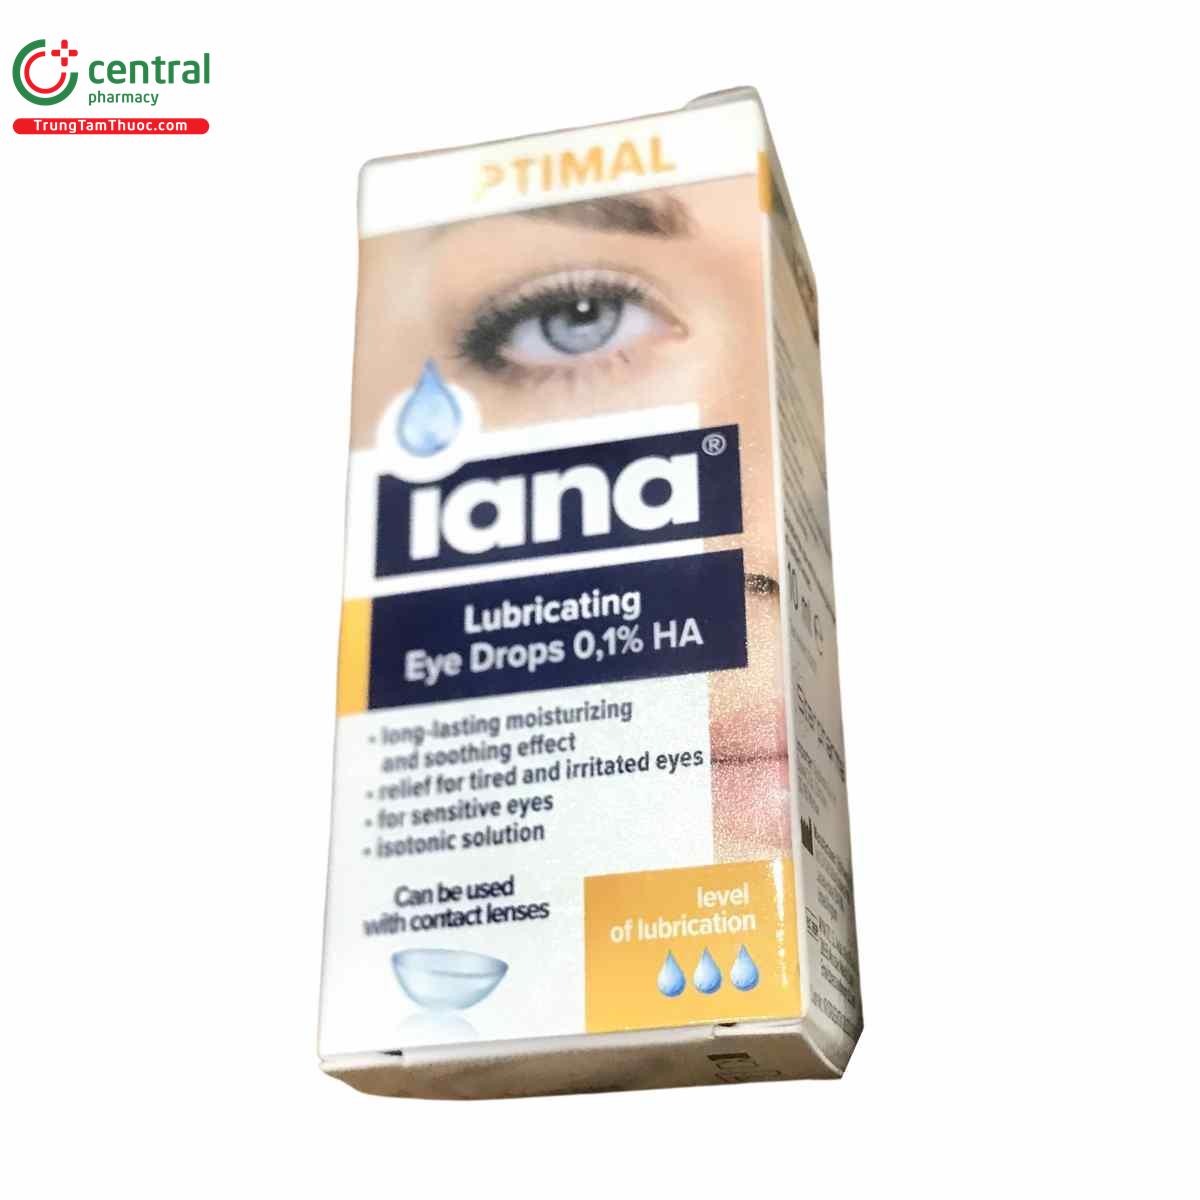 iana lubricating eye drops 3 K4417